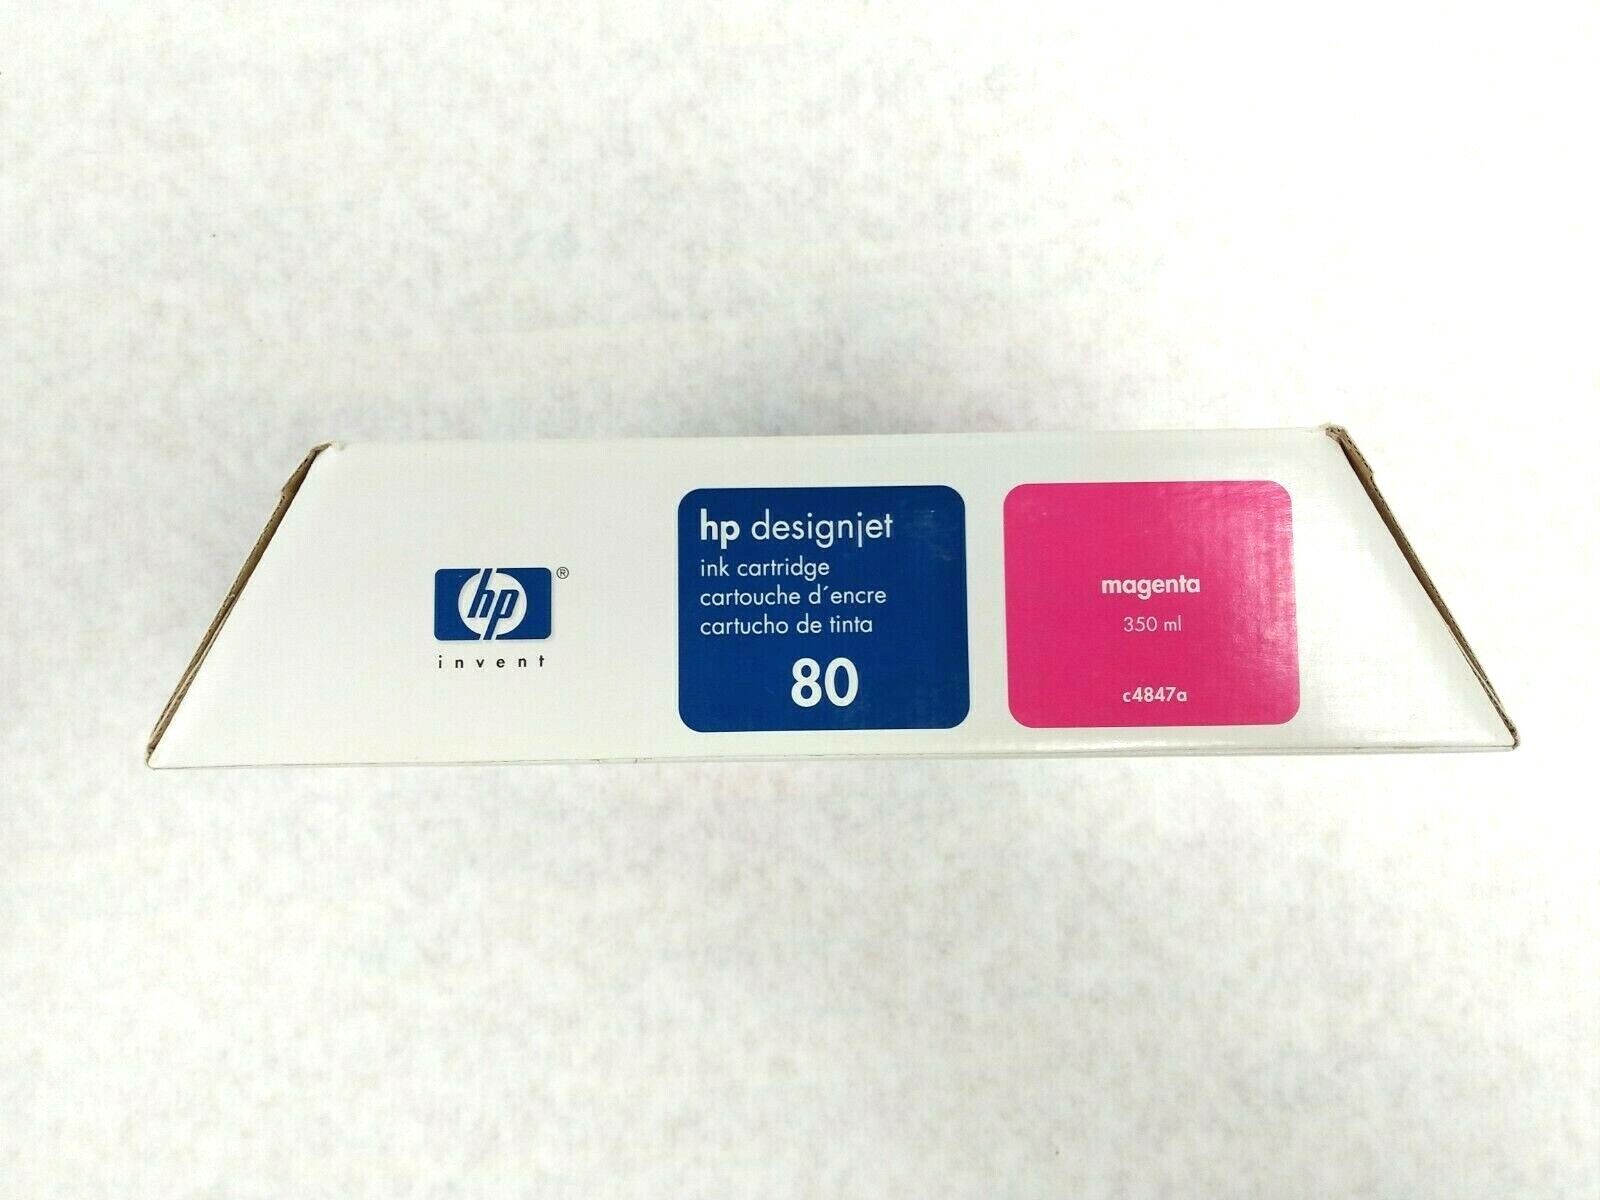 HP 80 Designjet C4847A Magenta 350ml Ink Cartridge 17 APR 10